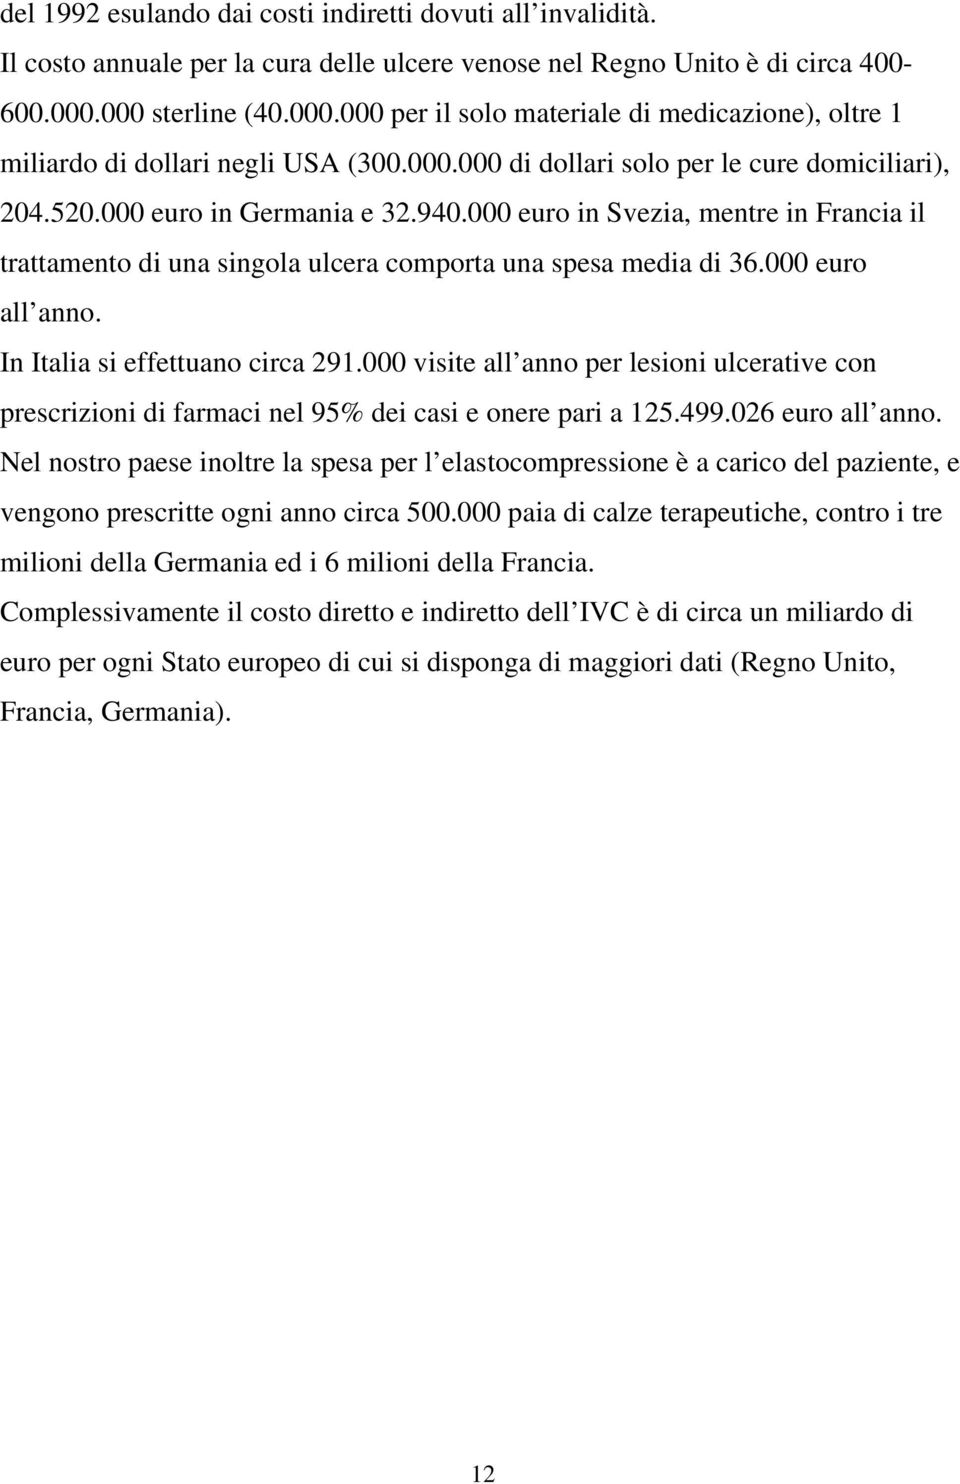 000 euro in Svezia, mentre in Francia il trattamento di una singola ulcera comporta una spesa media di 36.000 euro all anno. In Italia si effettuano circa 291.